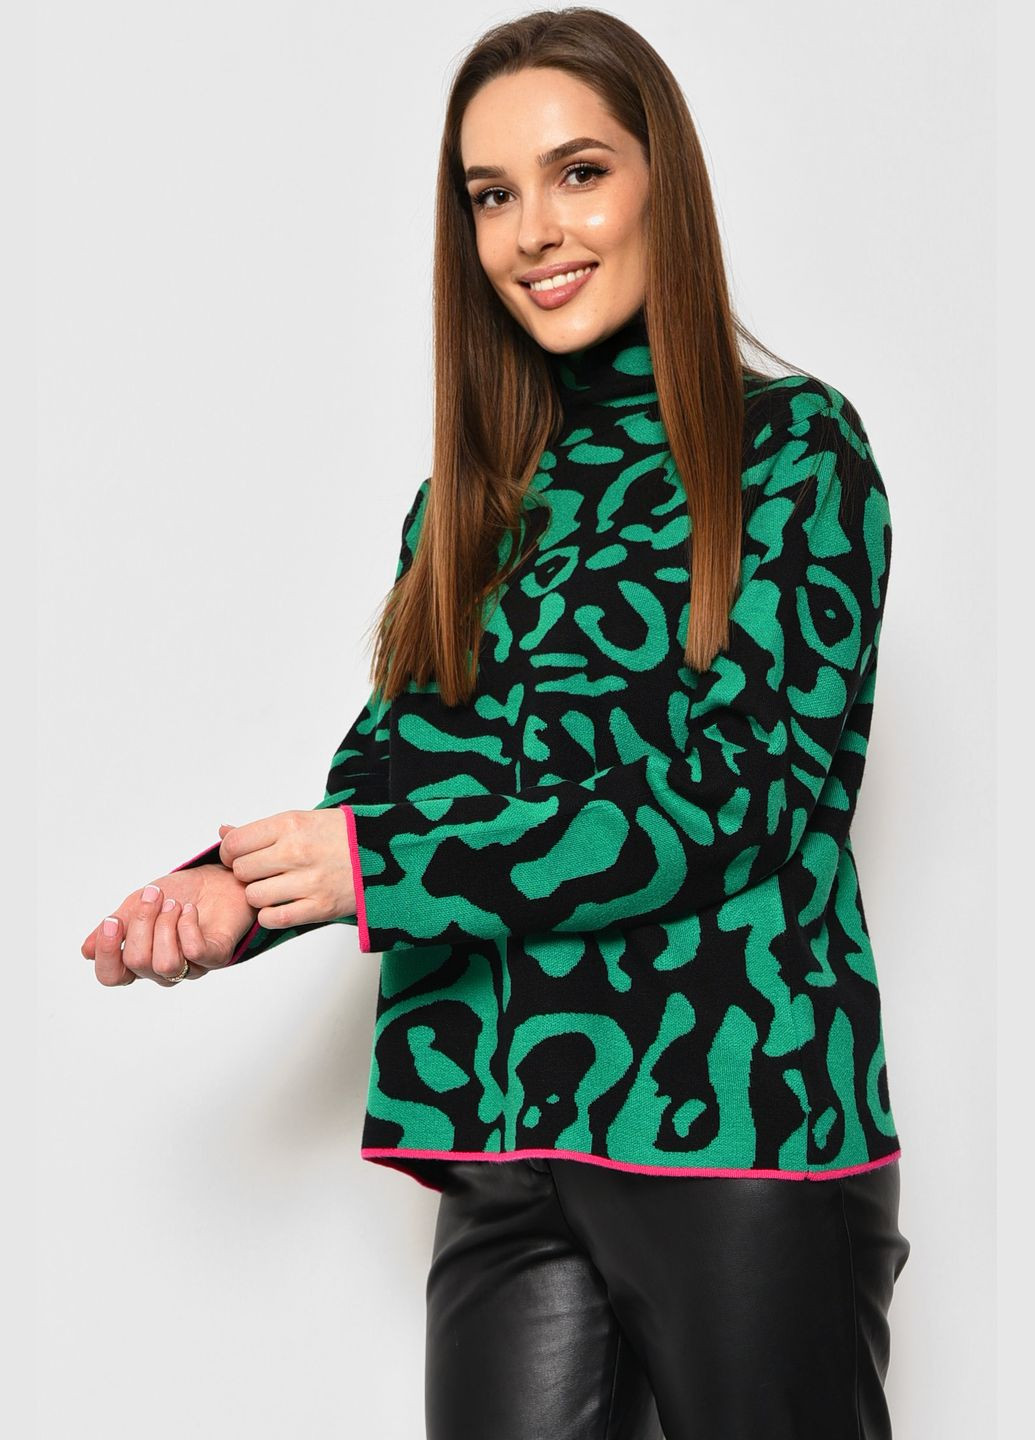 Черный зимний свитер женский с принтом черно-зеленого цвета пуловер Let's Shop